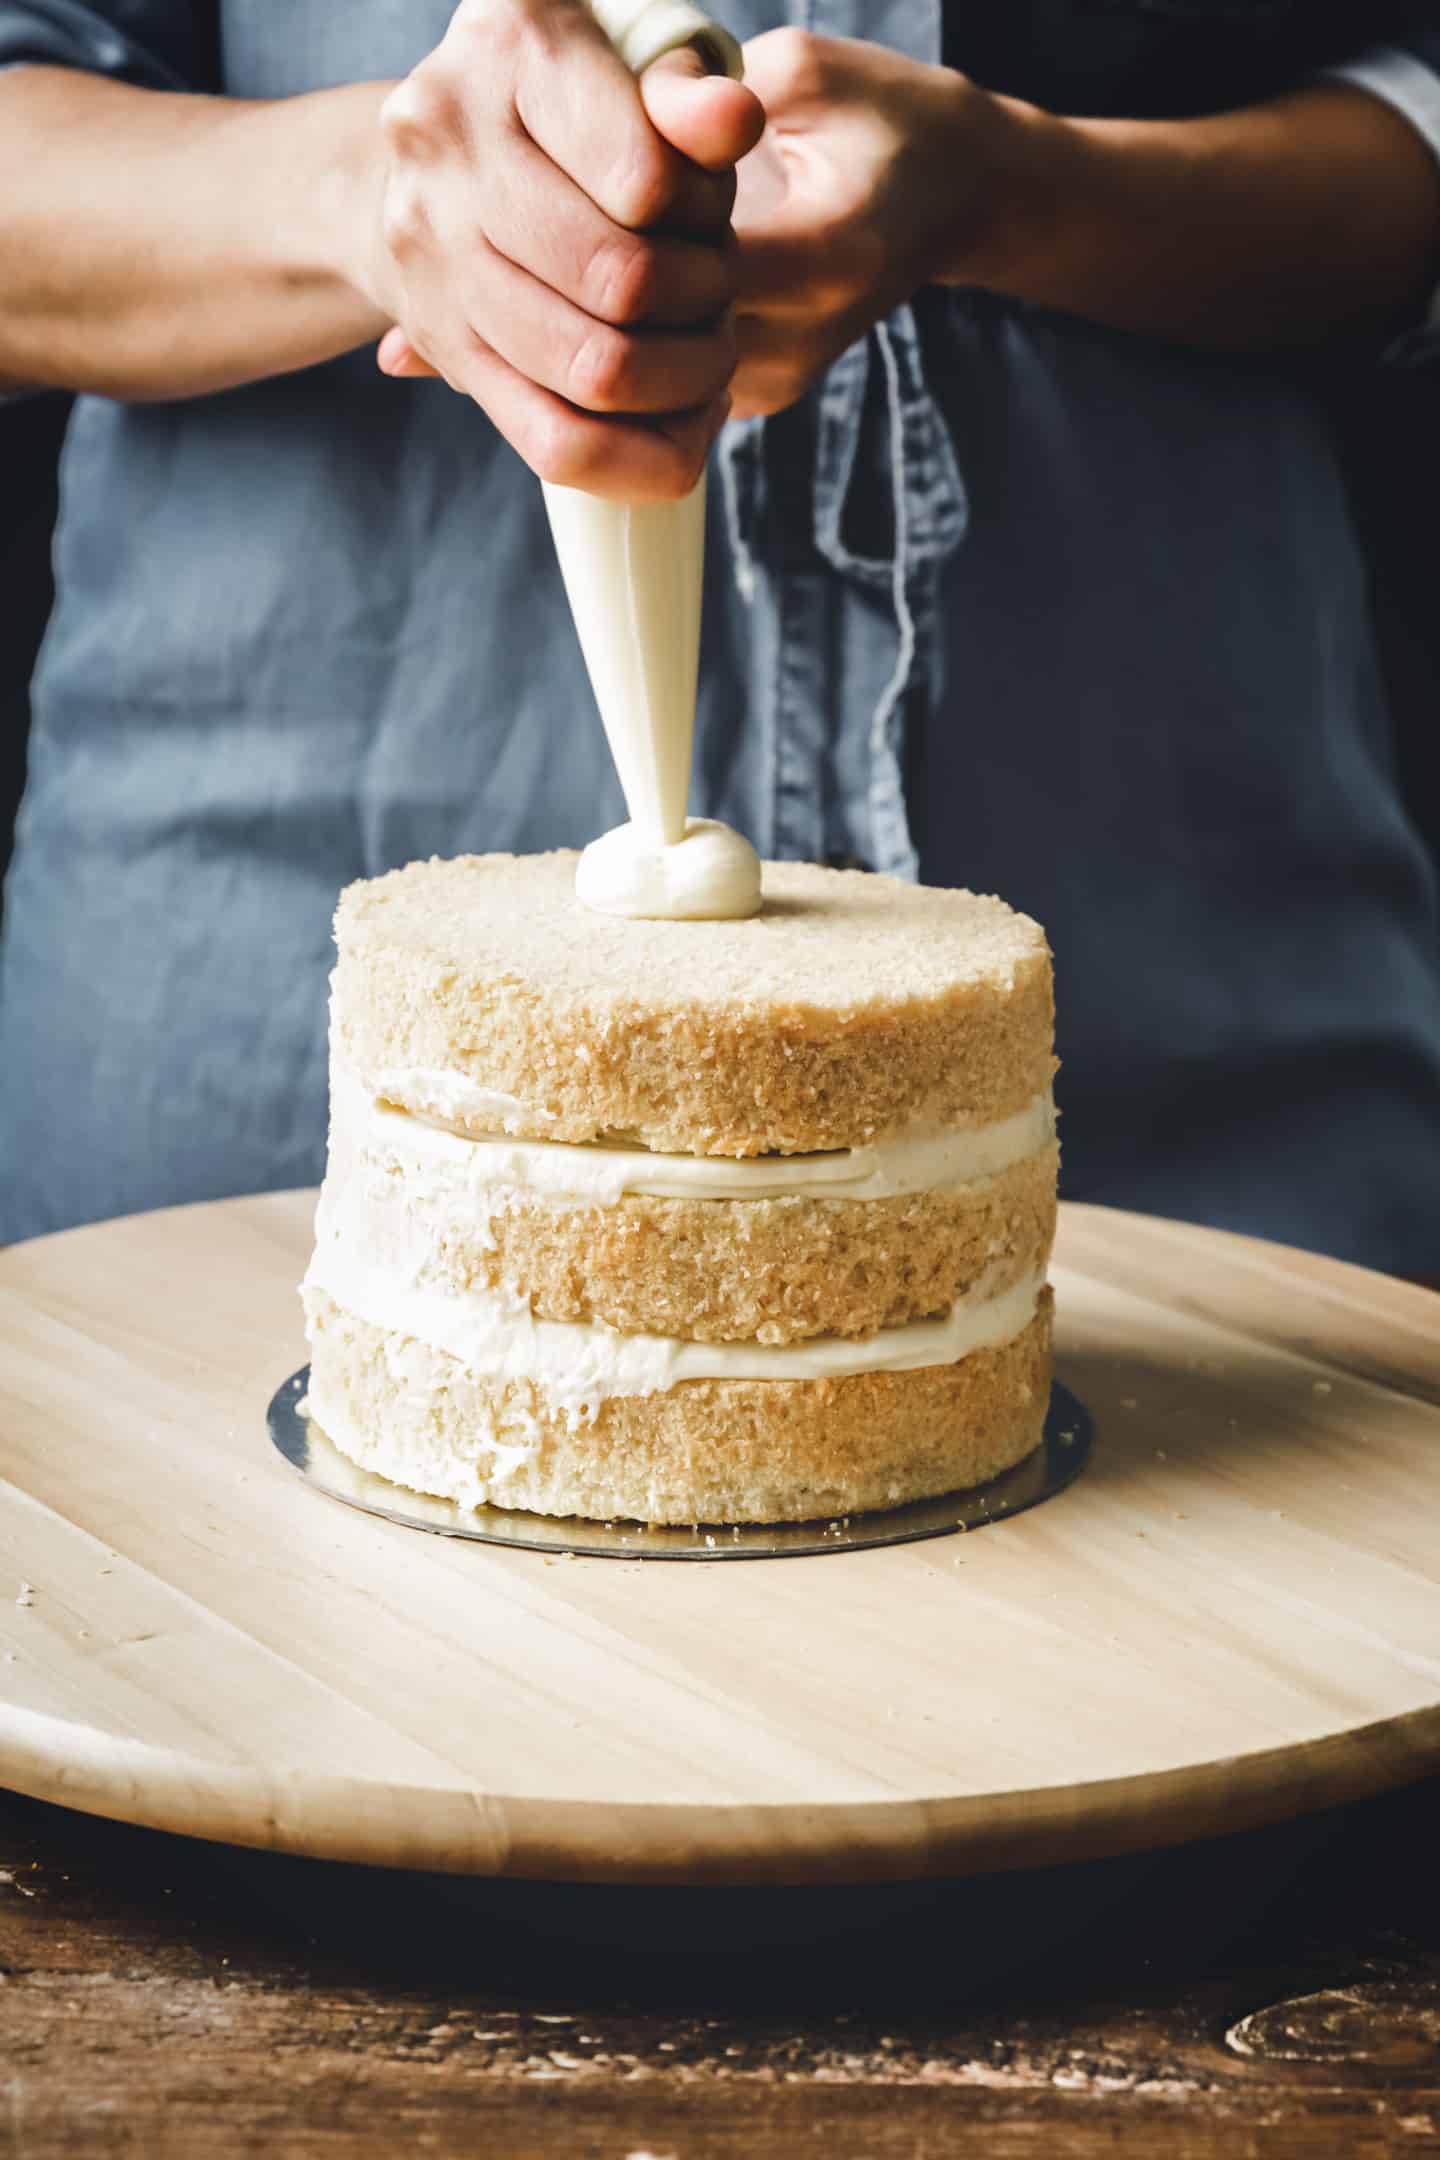 Matériel de qualité pour réaliser des layer cakes parfaits